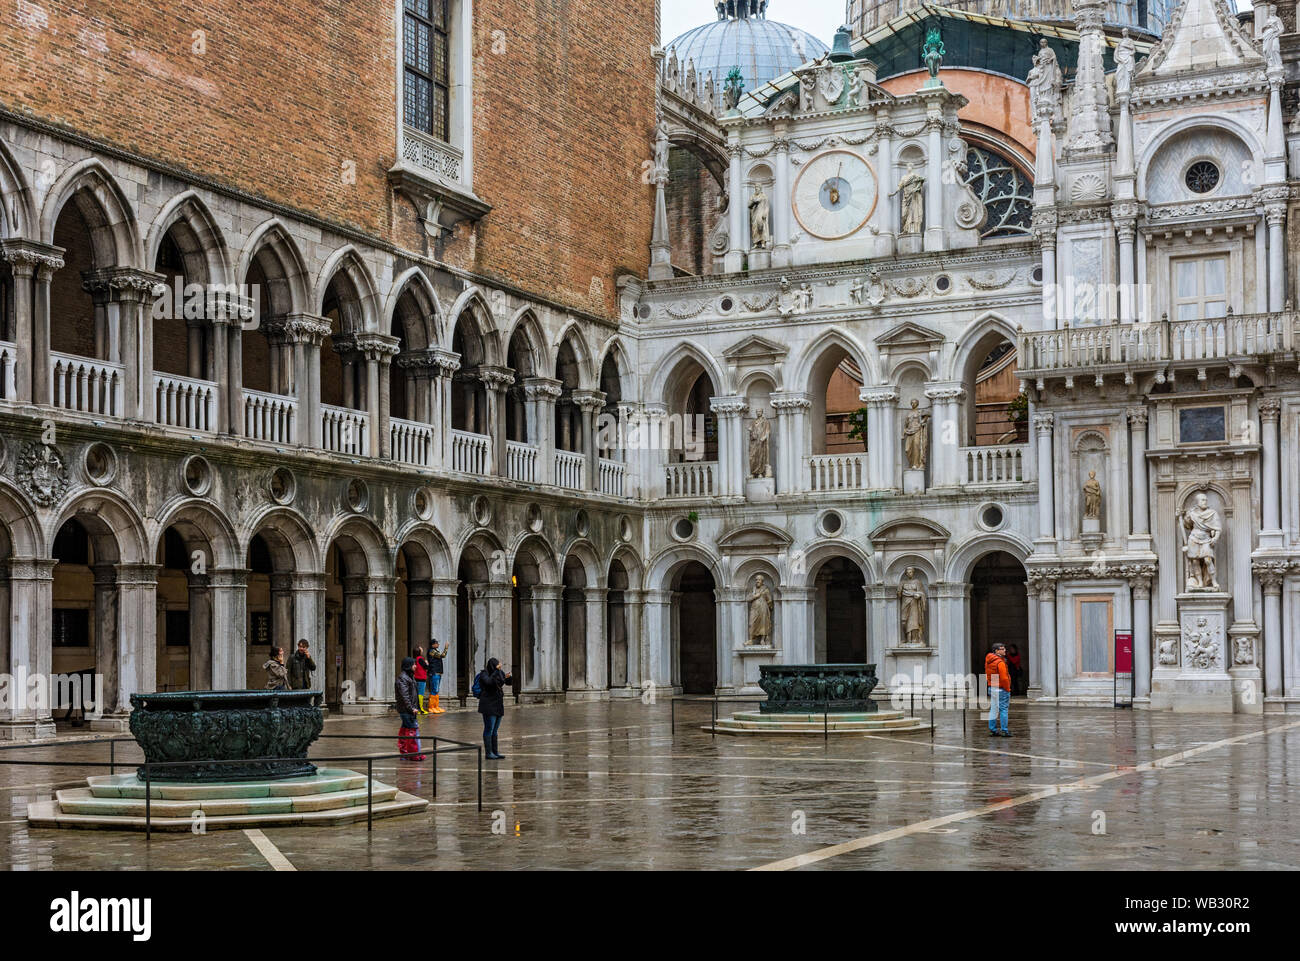 Die Facciata dell'Orologio (Fassade der Uhr) und Arkaden im Innenhof der Dogenpalast (Palazzo Ducale), Venedig, Italien Stockfoto